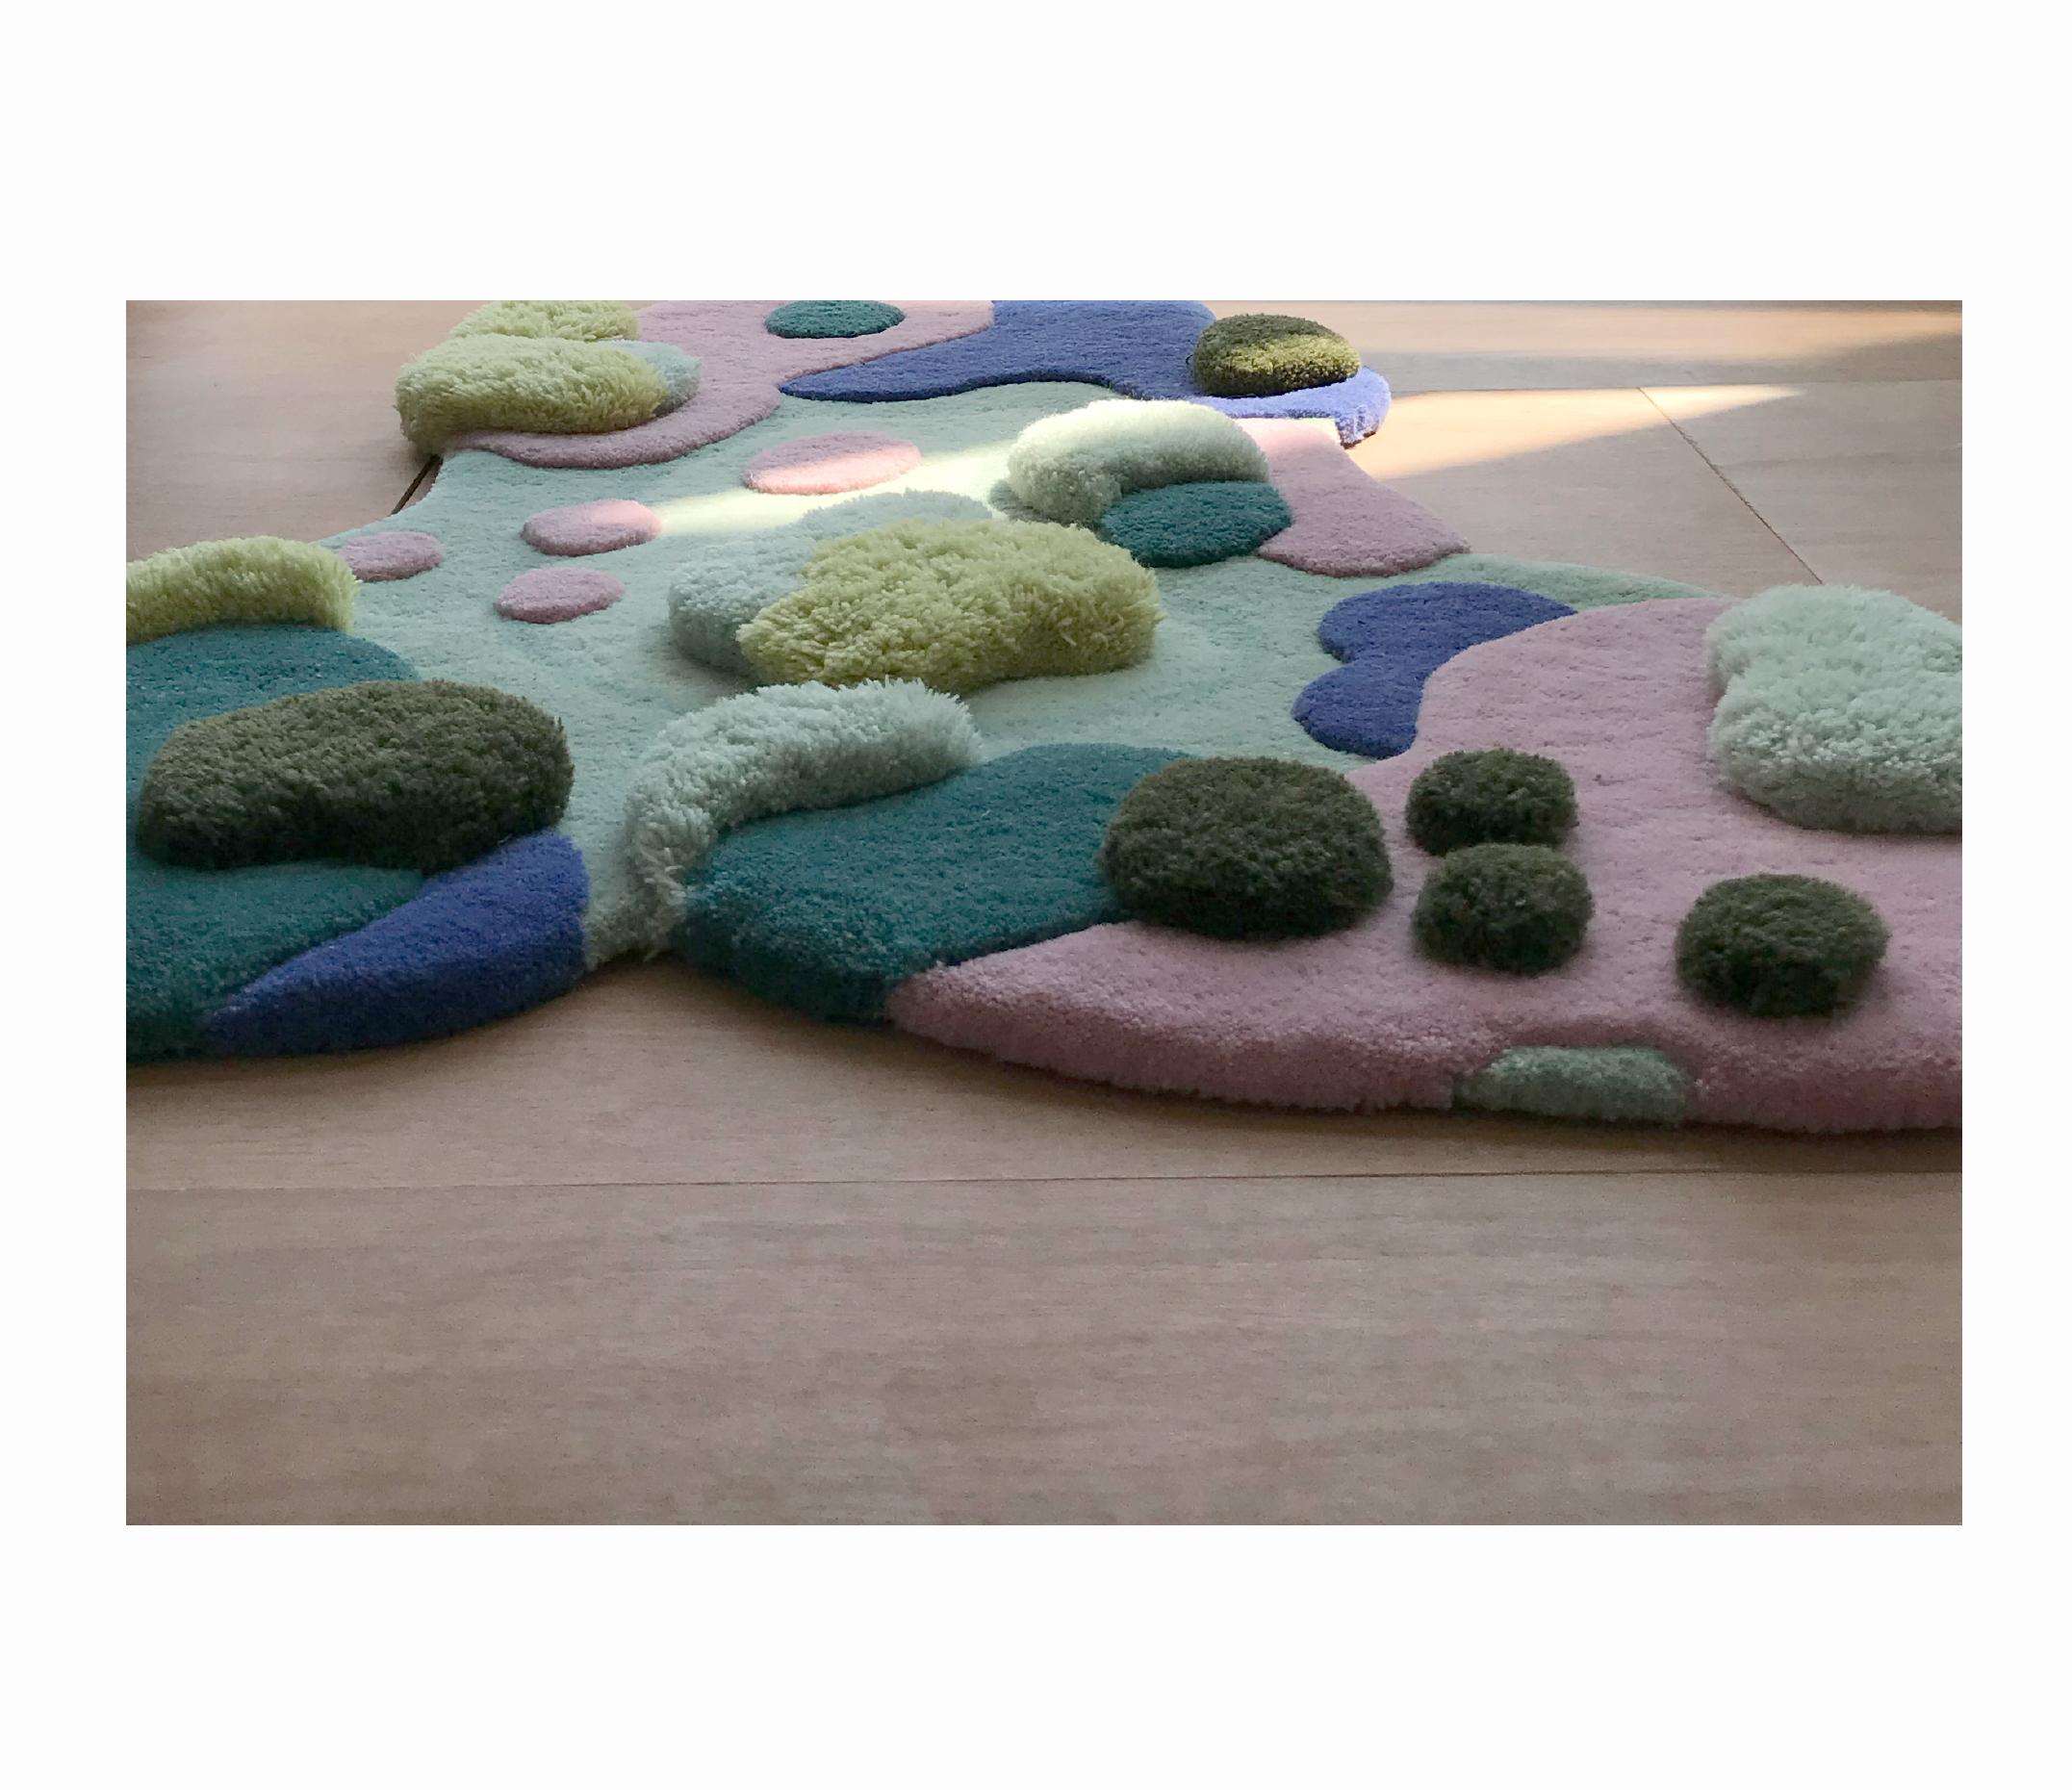 colourful carpets